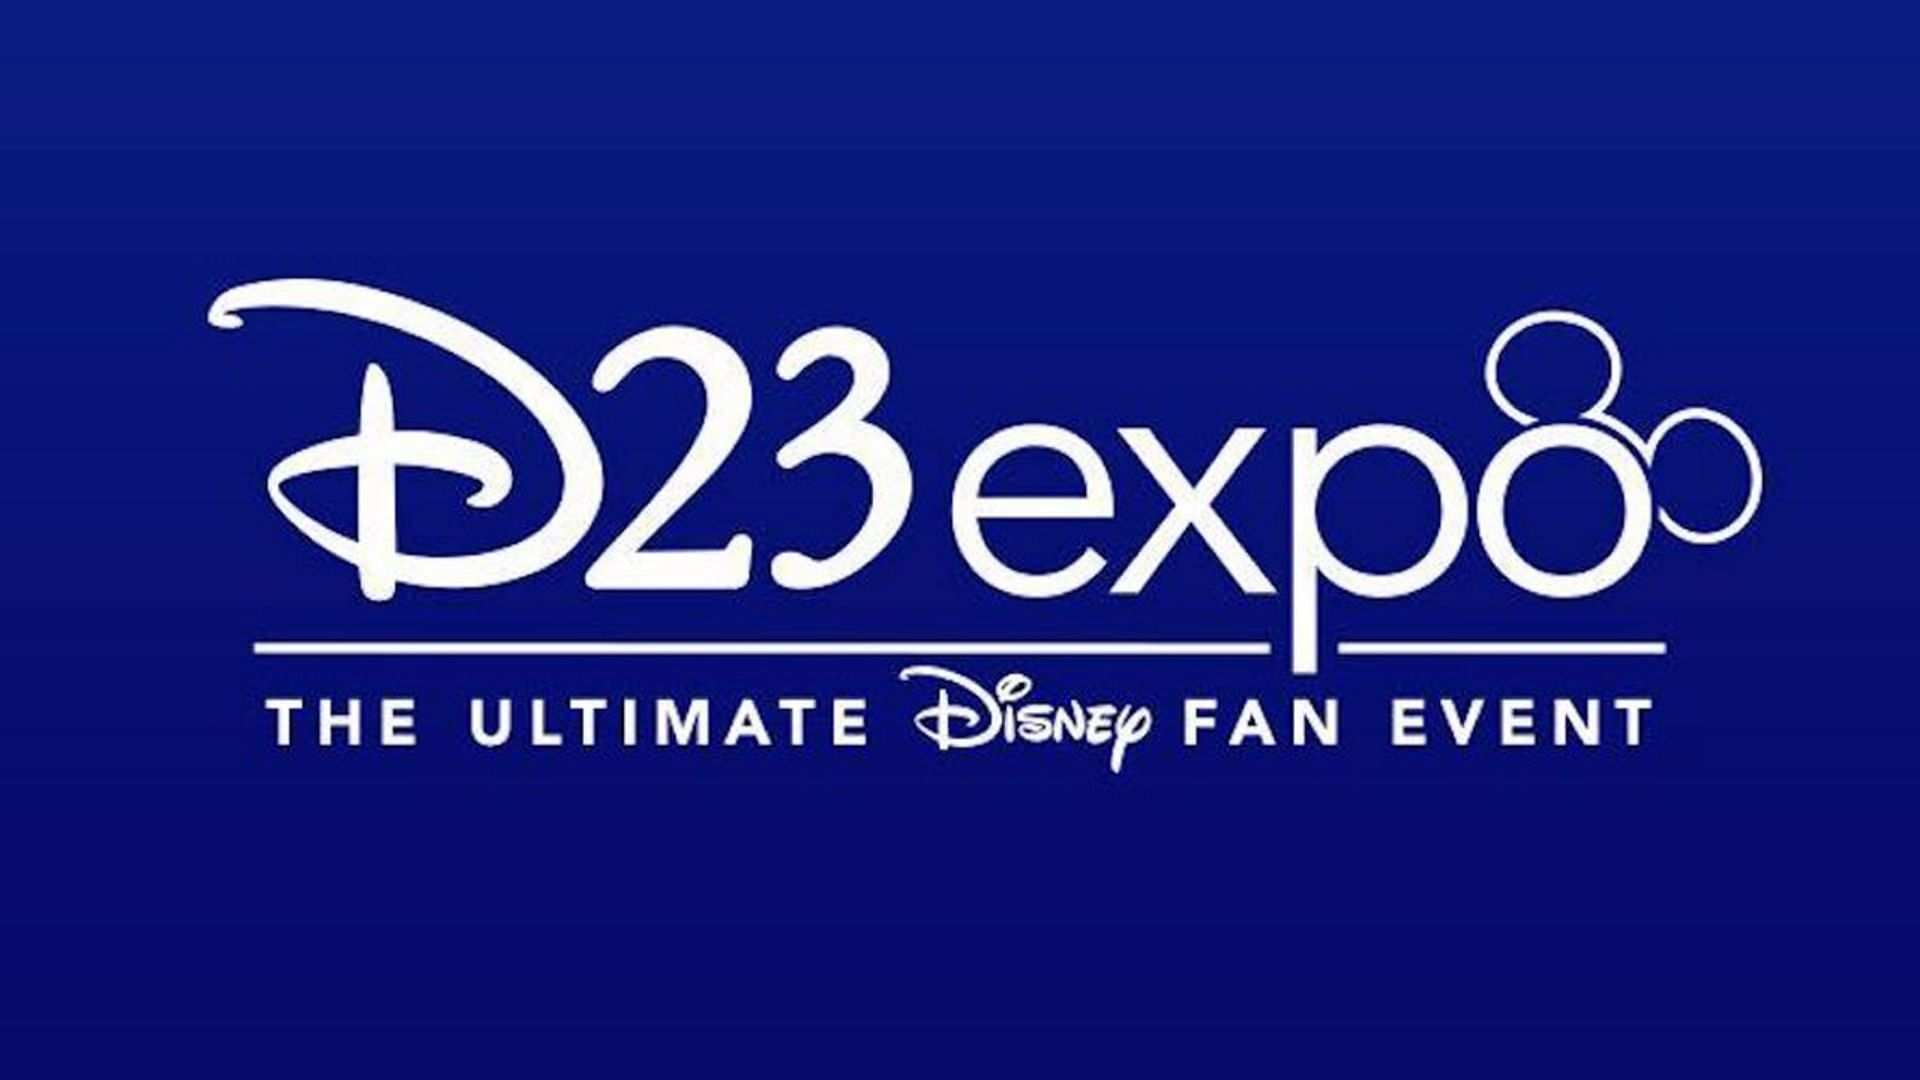 D23 Expo 2022 (Photo by the Walt Disney Company)